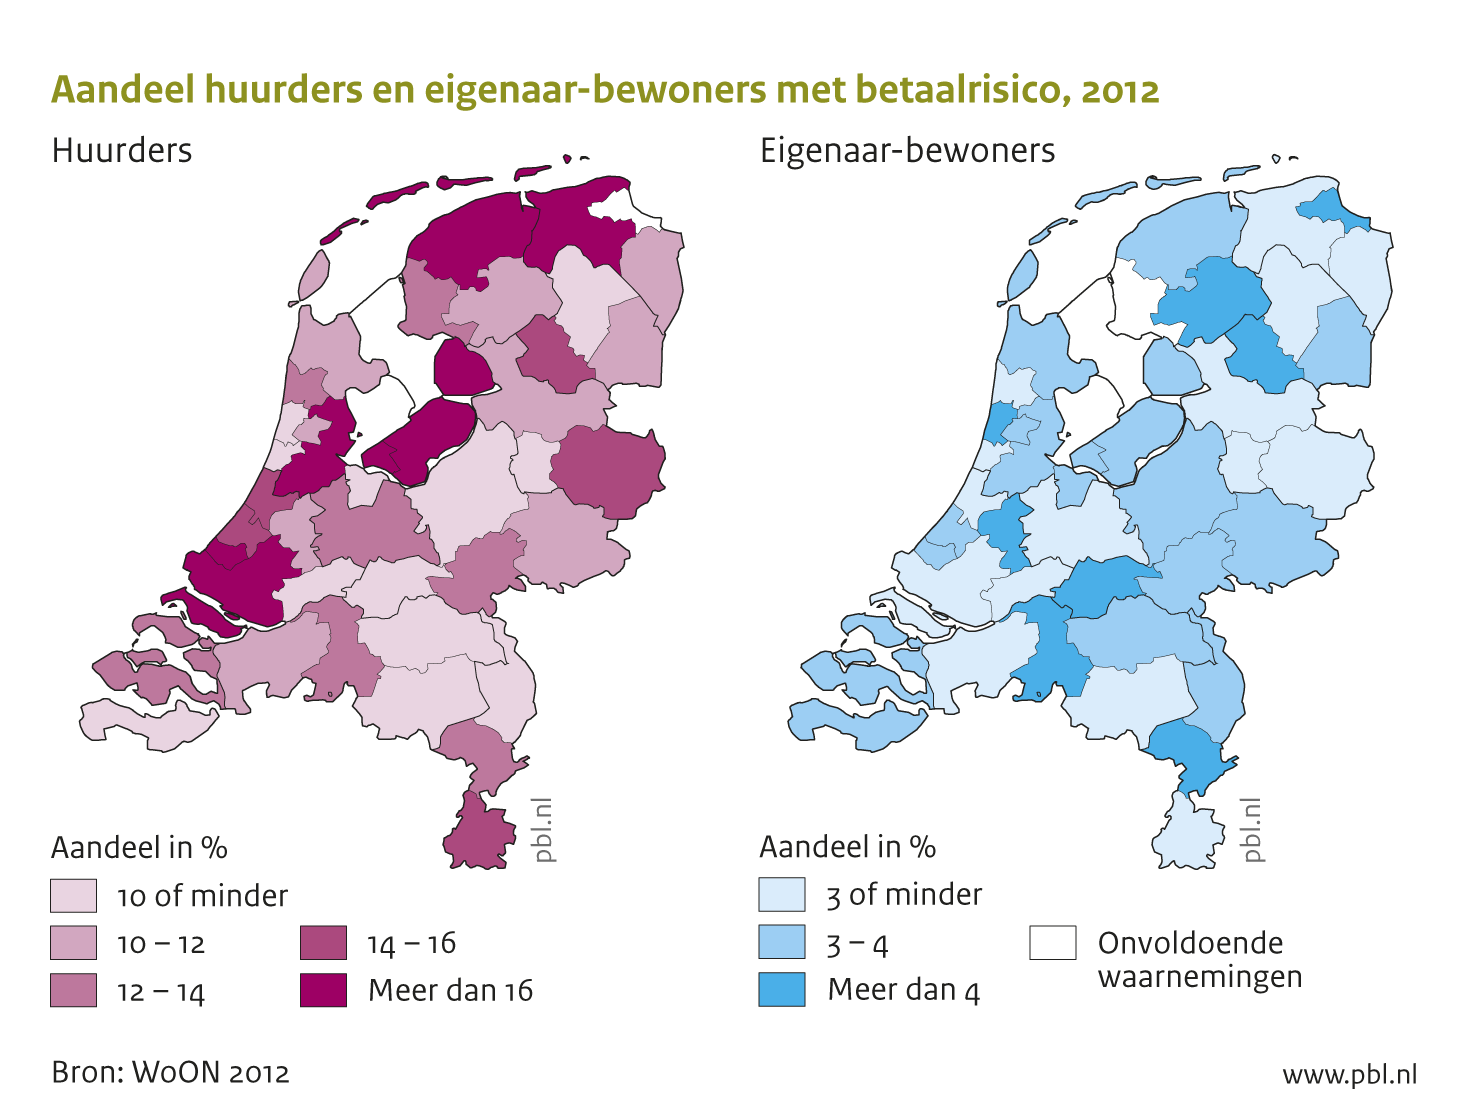 Regionaal zijn er onder huurders grote verschillen. Huurders met betaalrisico’s vinden we vooral in Amsterdam, de zuidvleugel van de Randstad, Noord-Friesland, deel van Groningen en Flevoland.